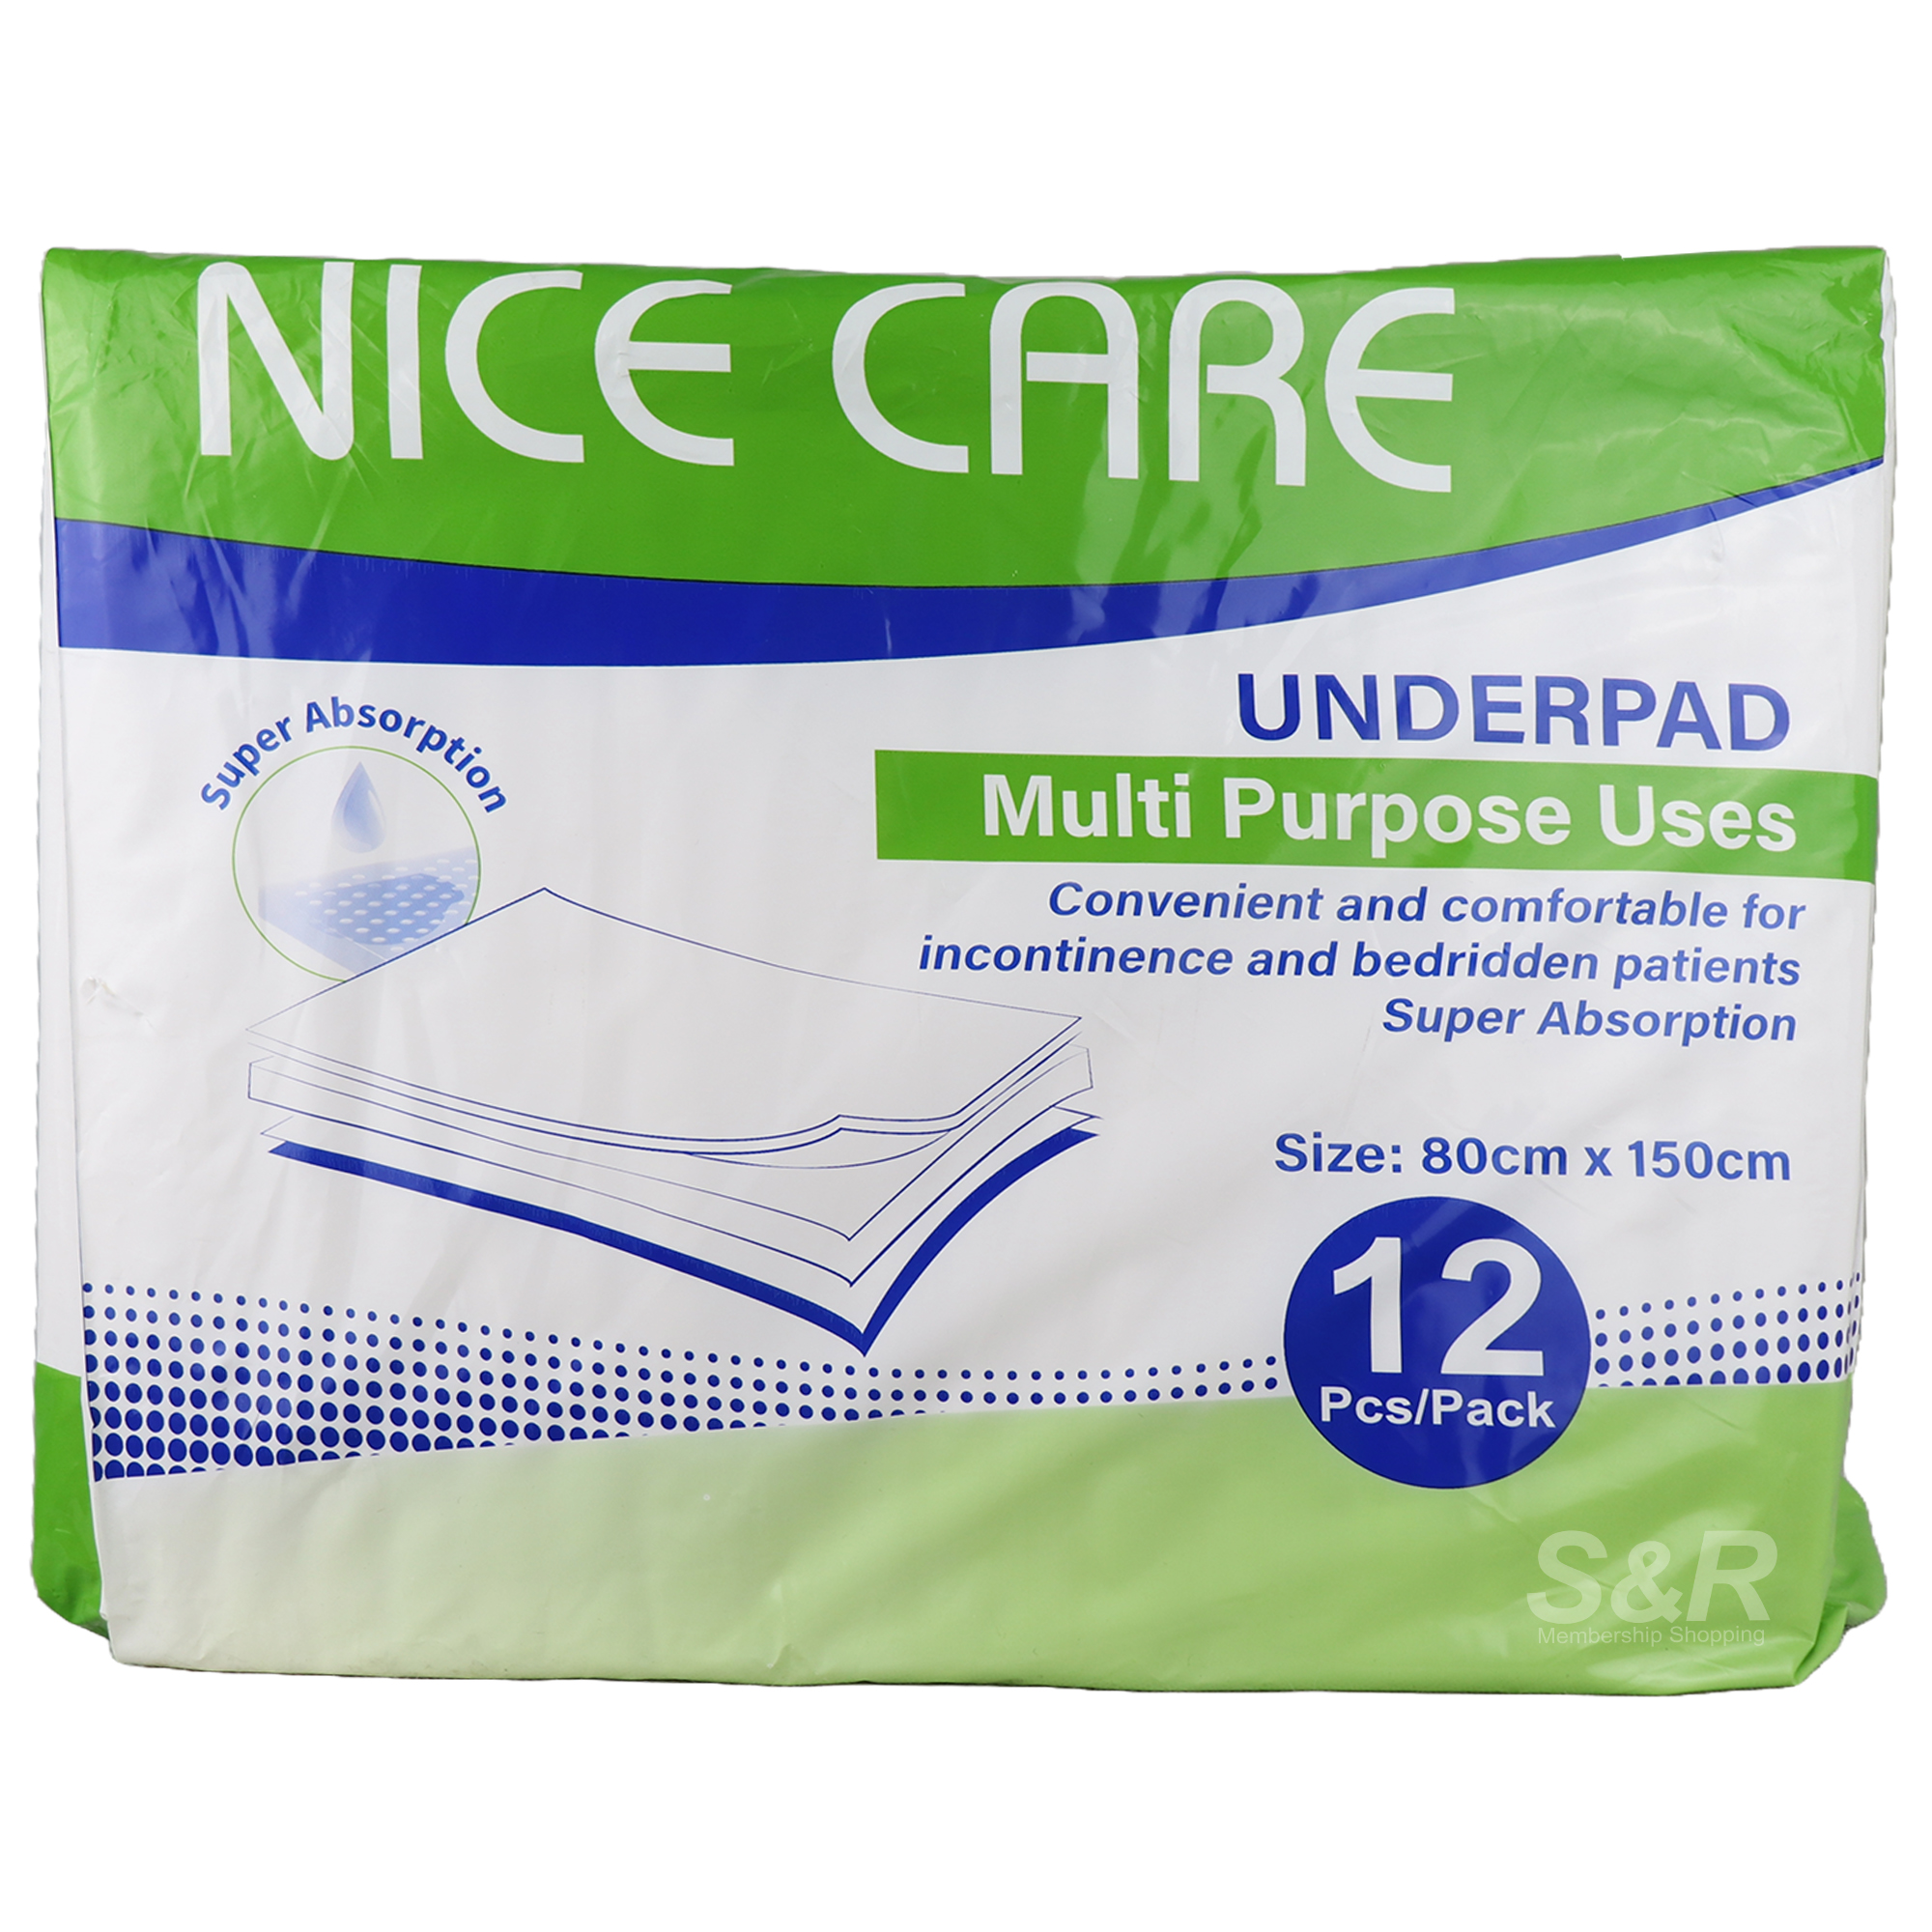 Nice Care Underpad 12pcs